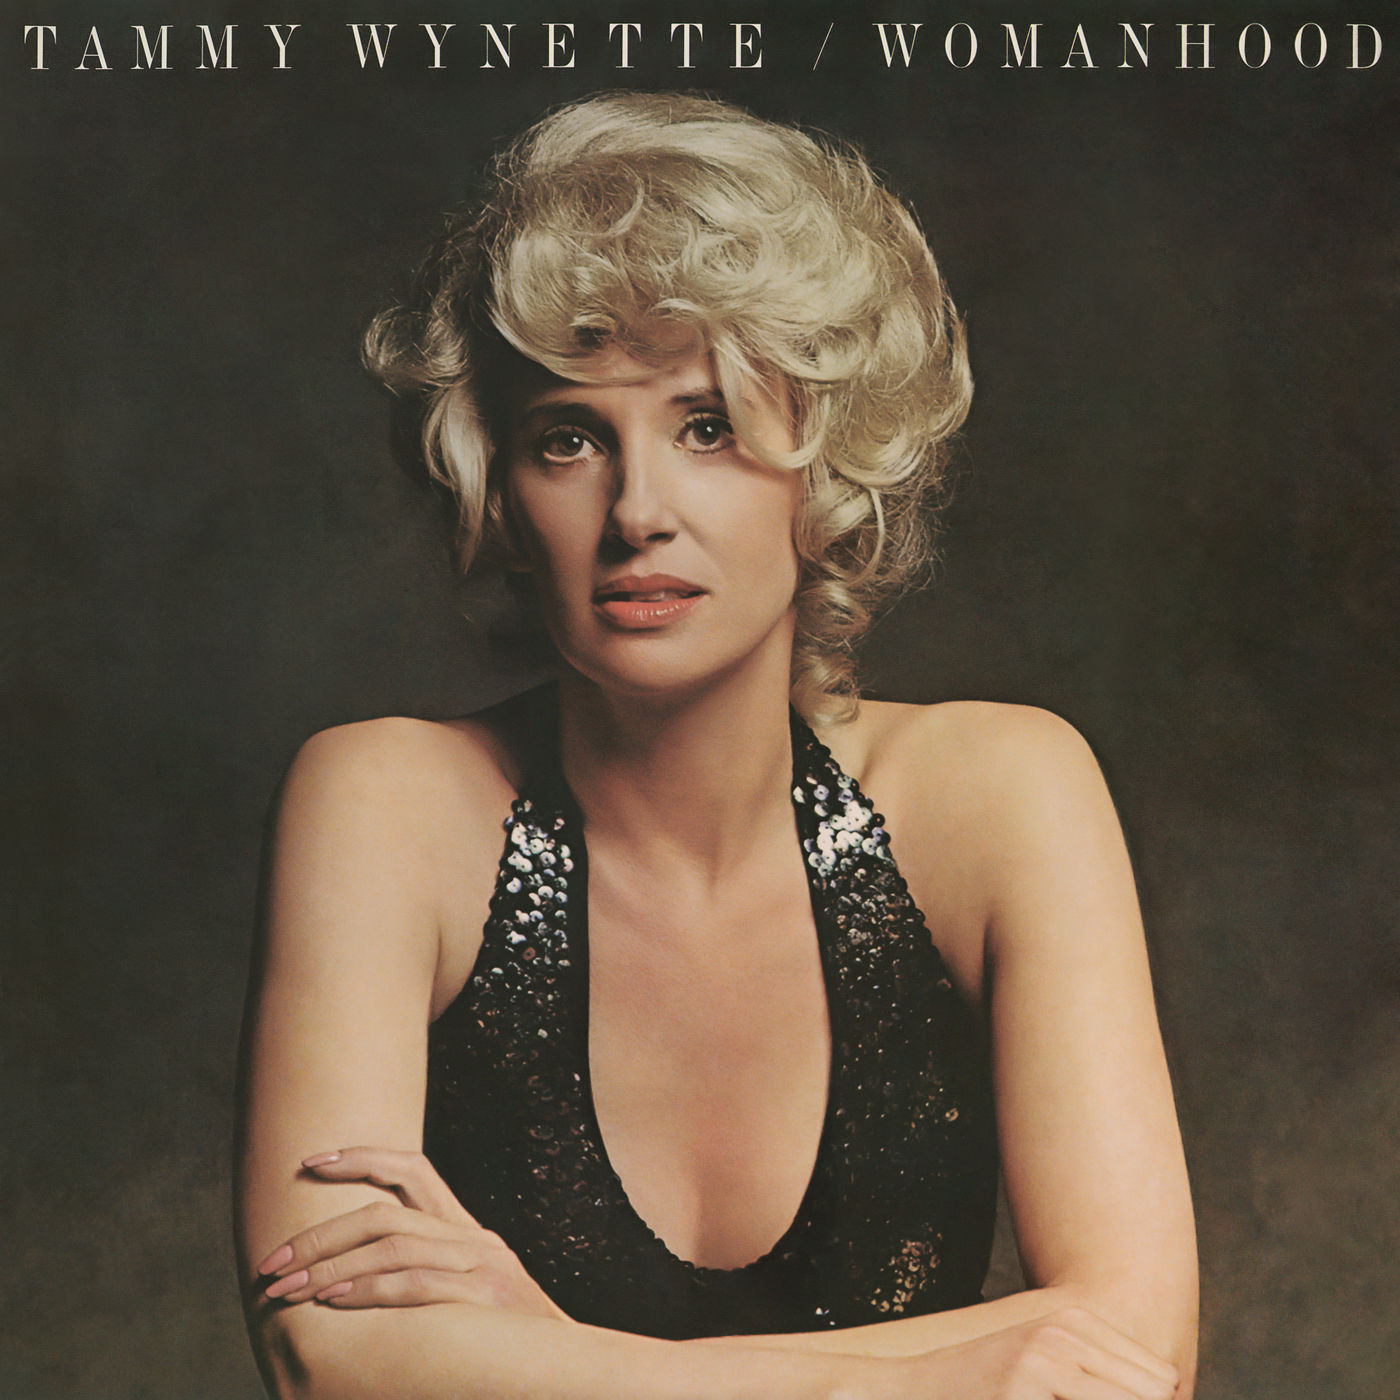 Tammy Wynette – Womanhood